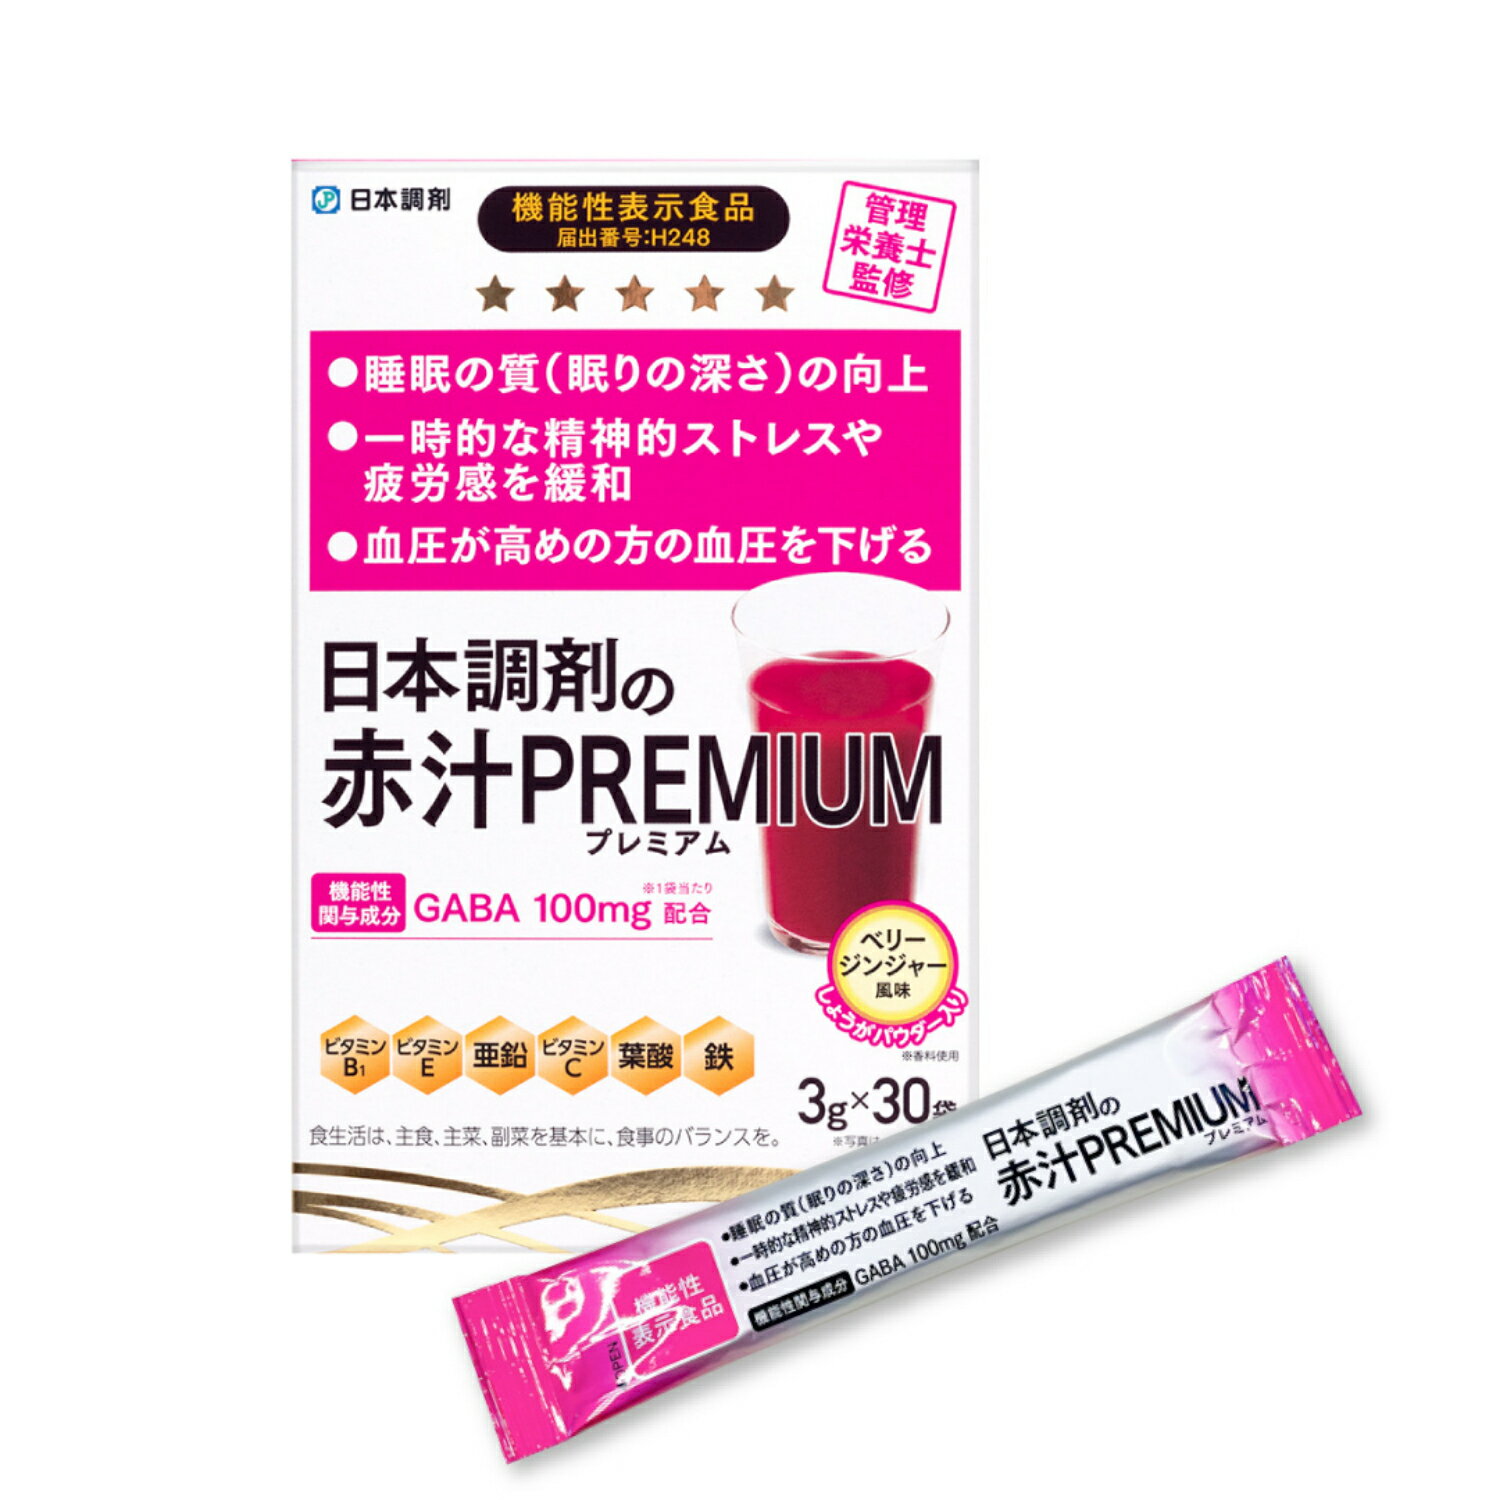 【機能性表示食品】 日本調剤 赤汁 PREMIUM 30袋(30日分) GABA 100mg配合 ビタミン ミネラル